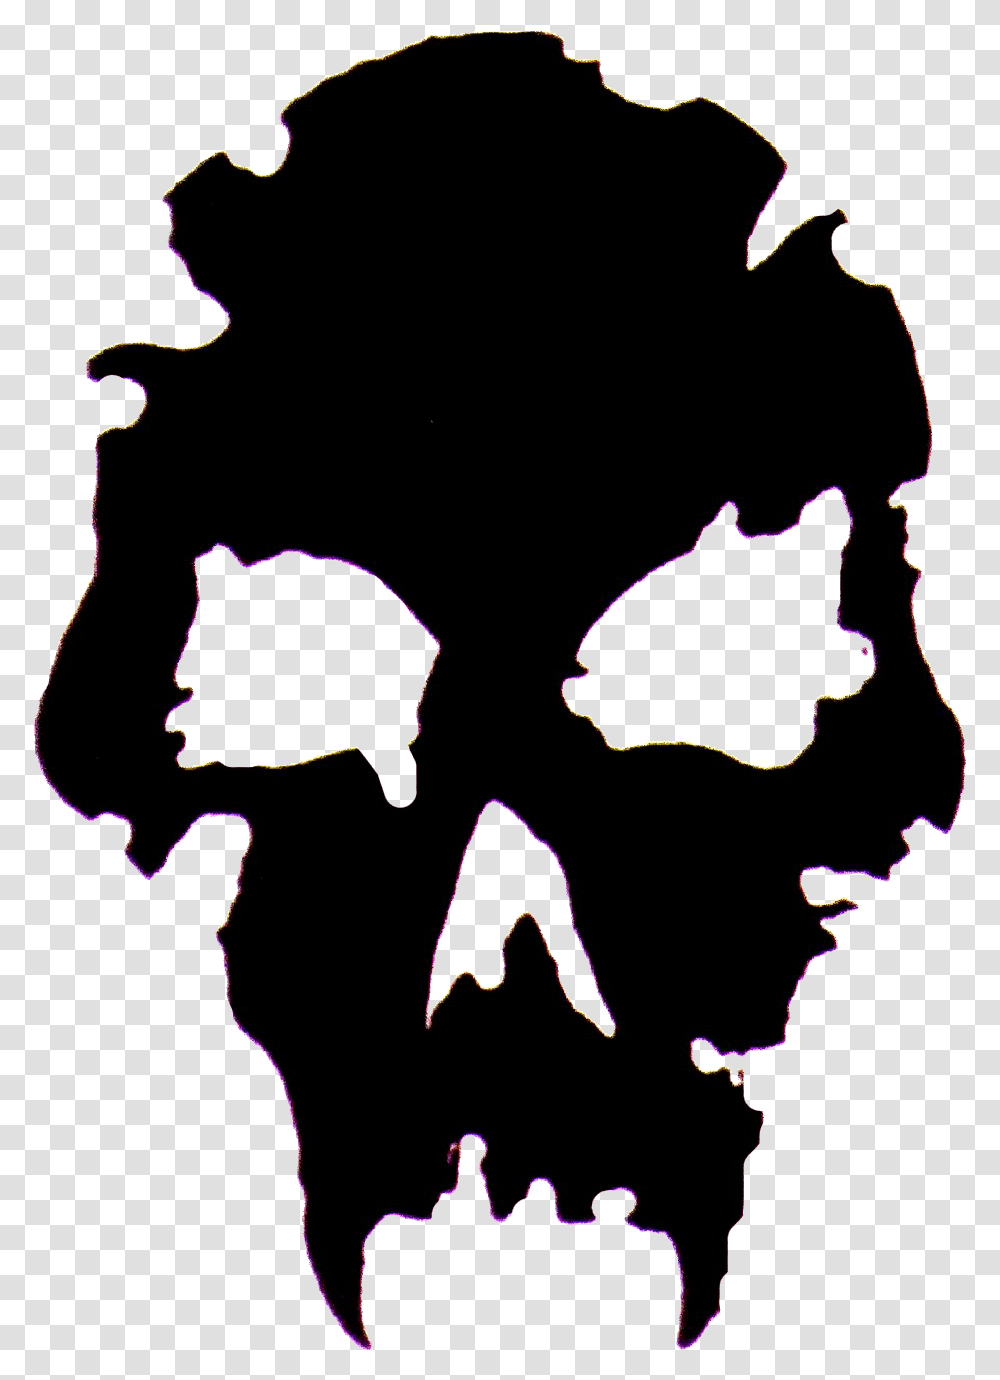 Vampire Nosferatu Clip Art Vampire The Masquerade Skull, Plot, Diagram, Map Transparent Png